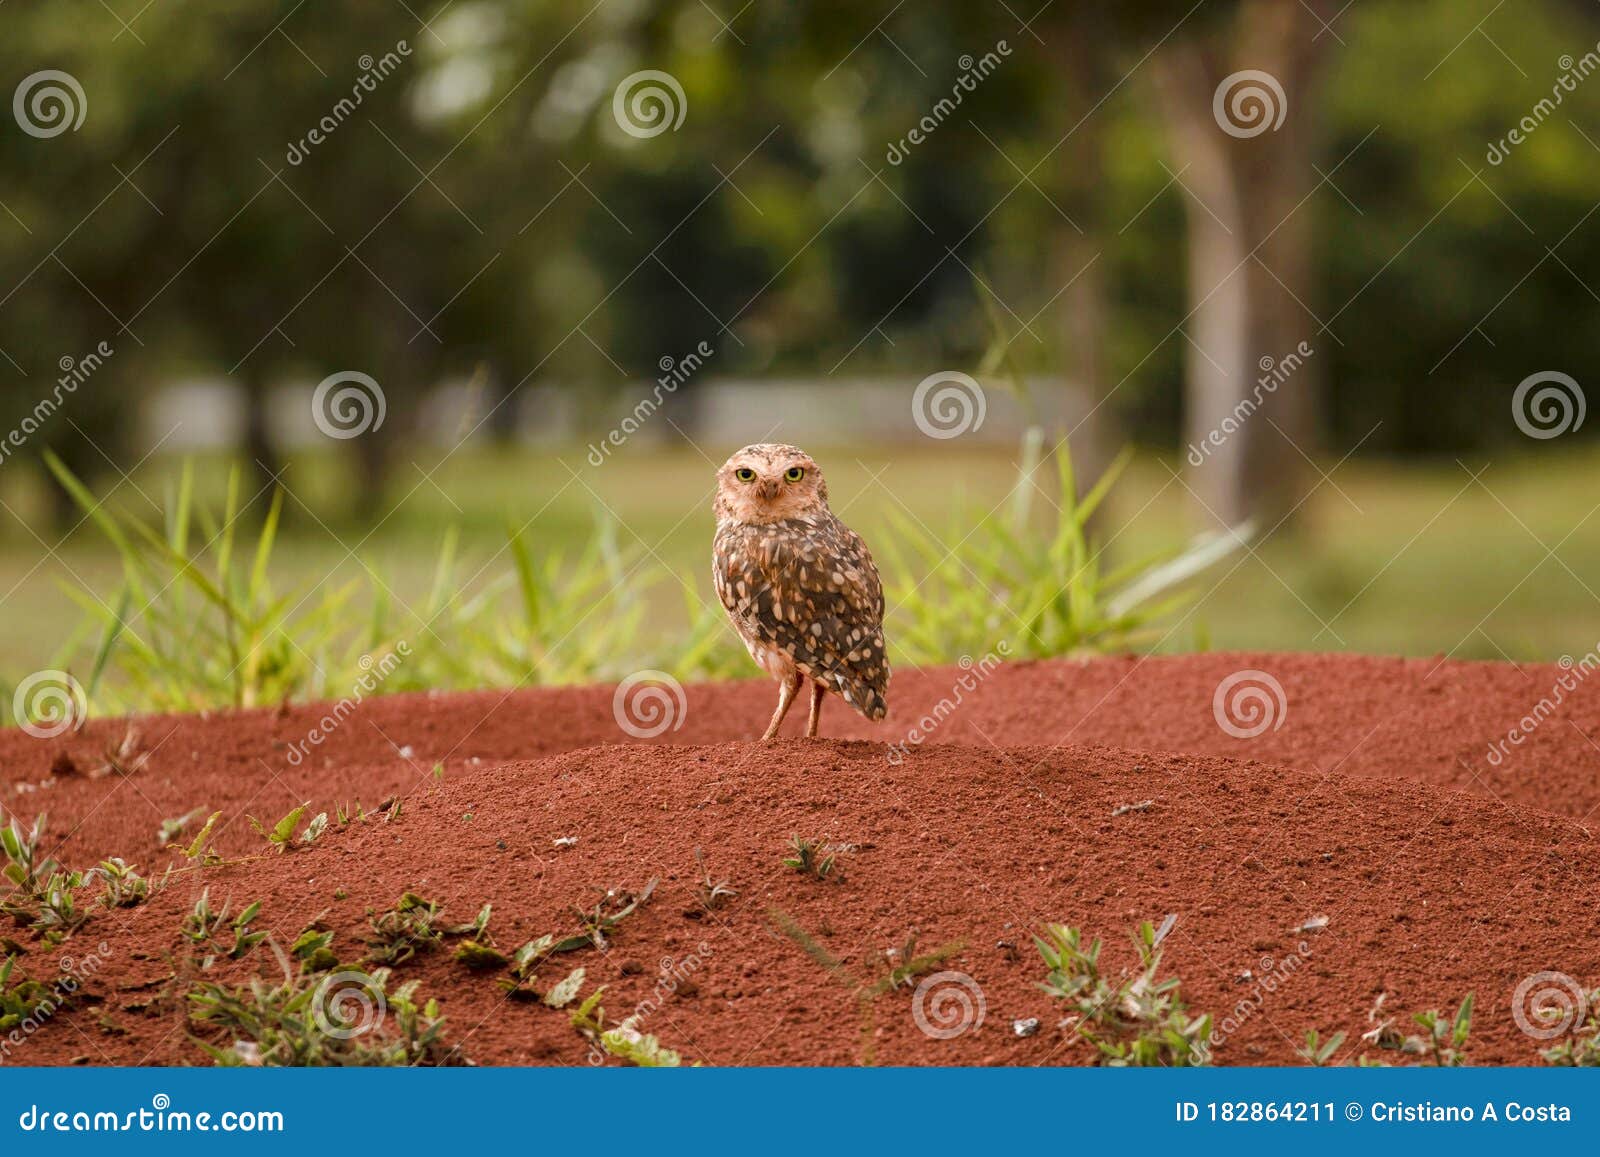 little watchful owl